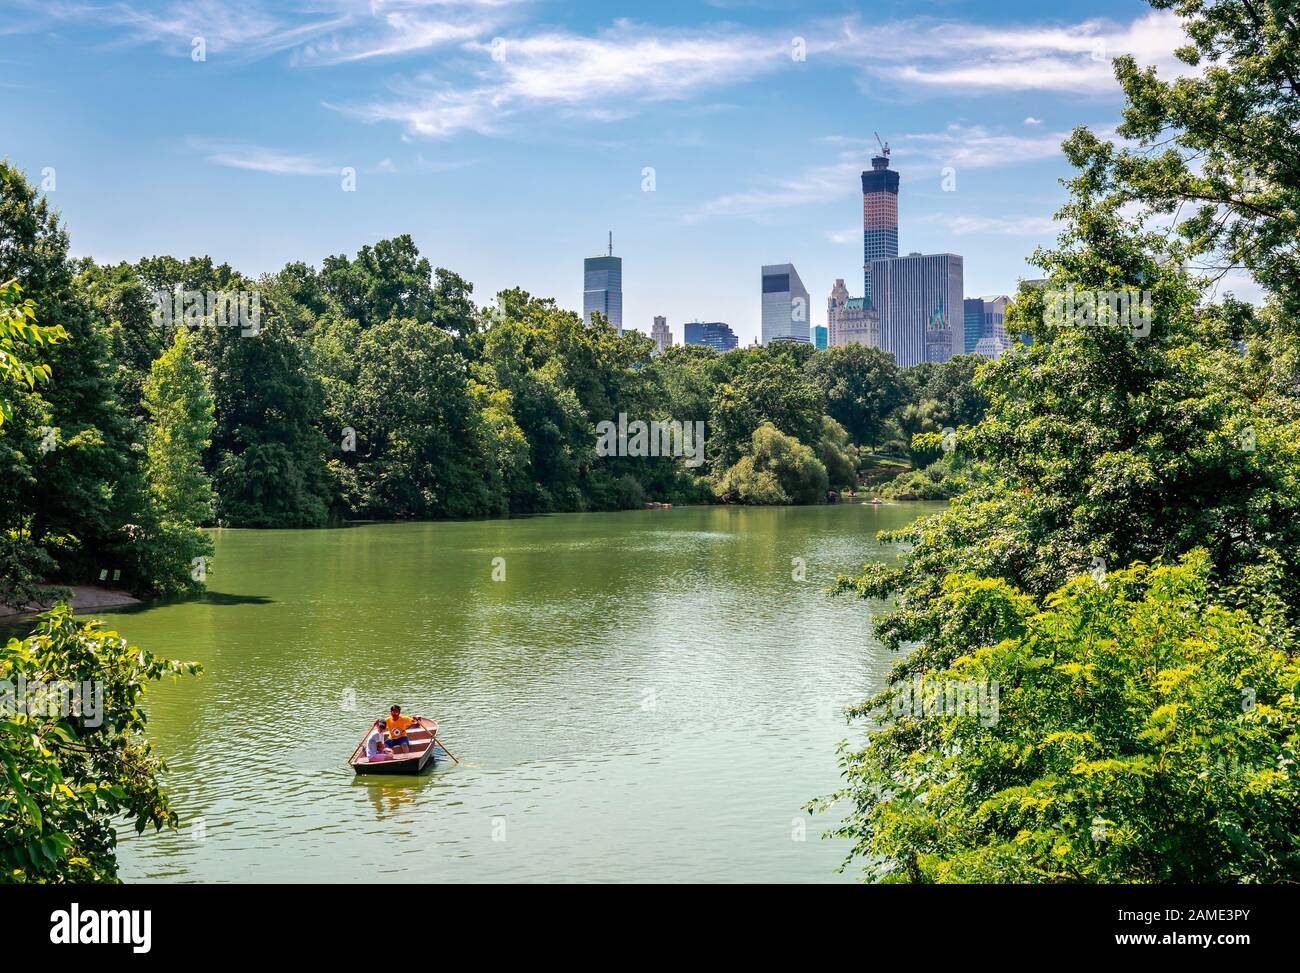 NYC, NY/USA - 12. Juli 2014: Blick auf den Central Park mit der Skyline von Manhattan im Hintergrund der West Side. Stockfoto